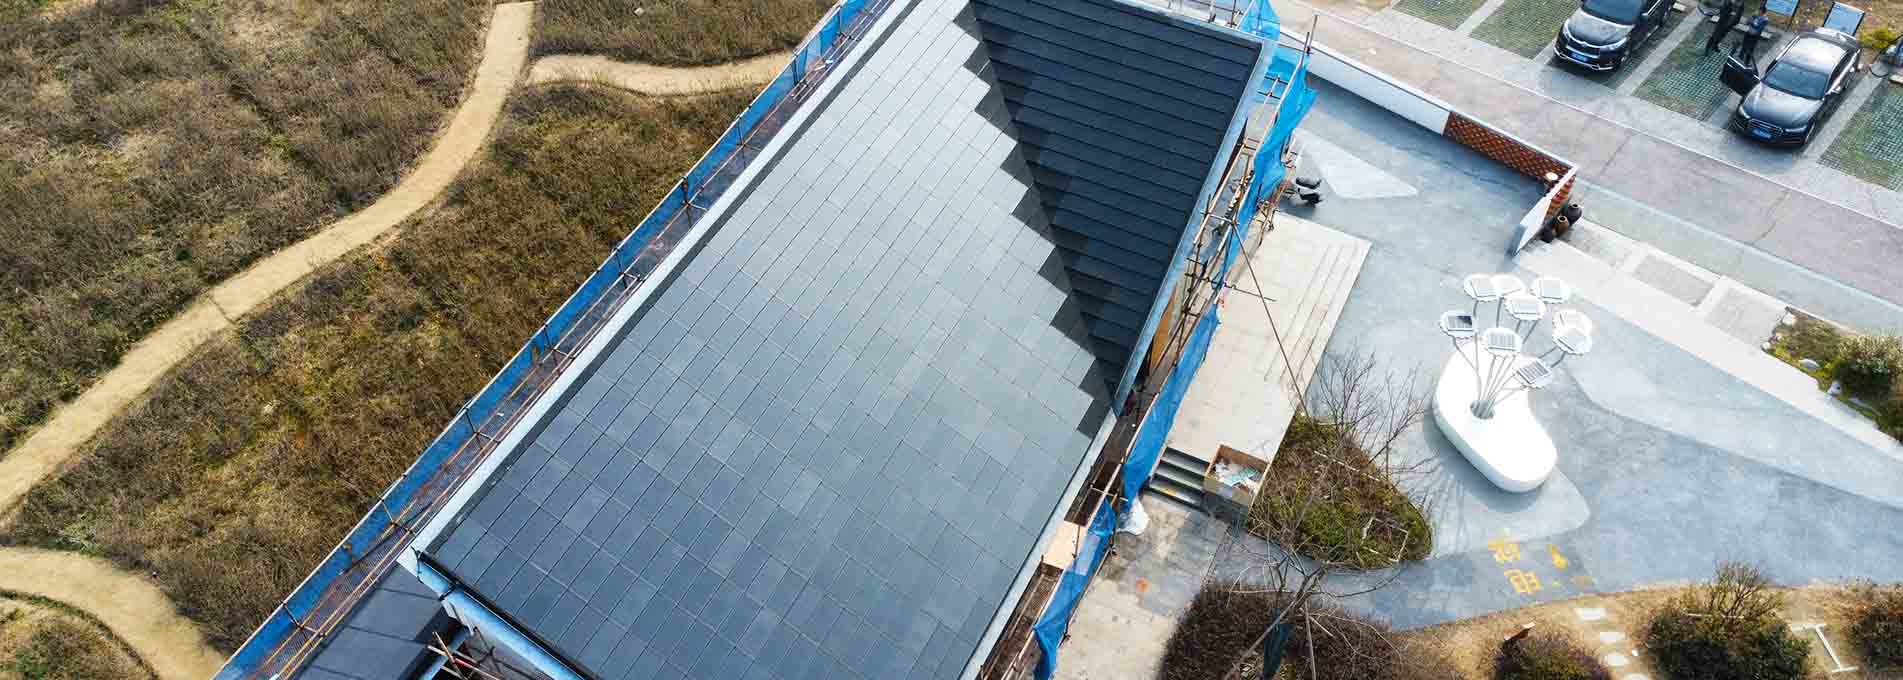 Dachówki z panelami słonecznymi